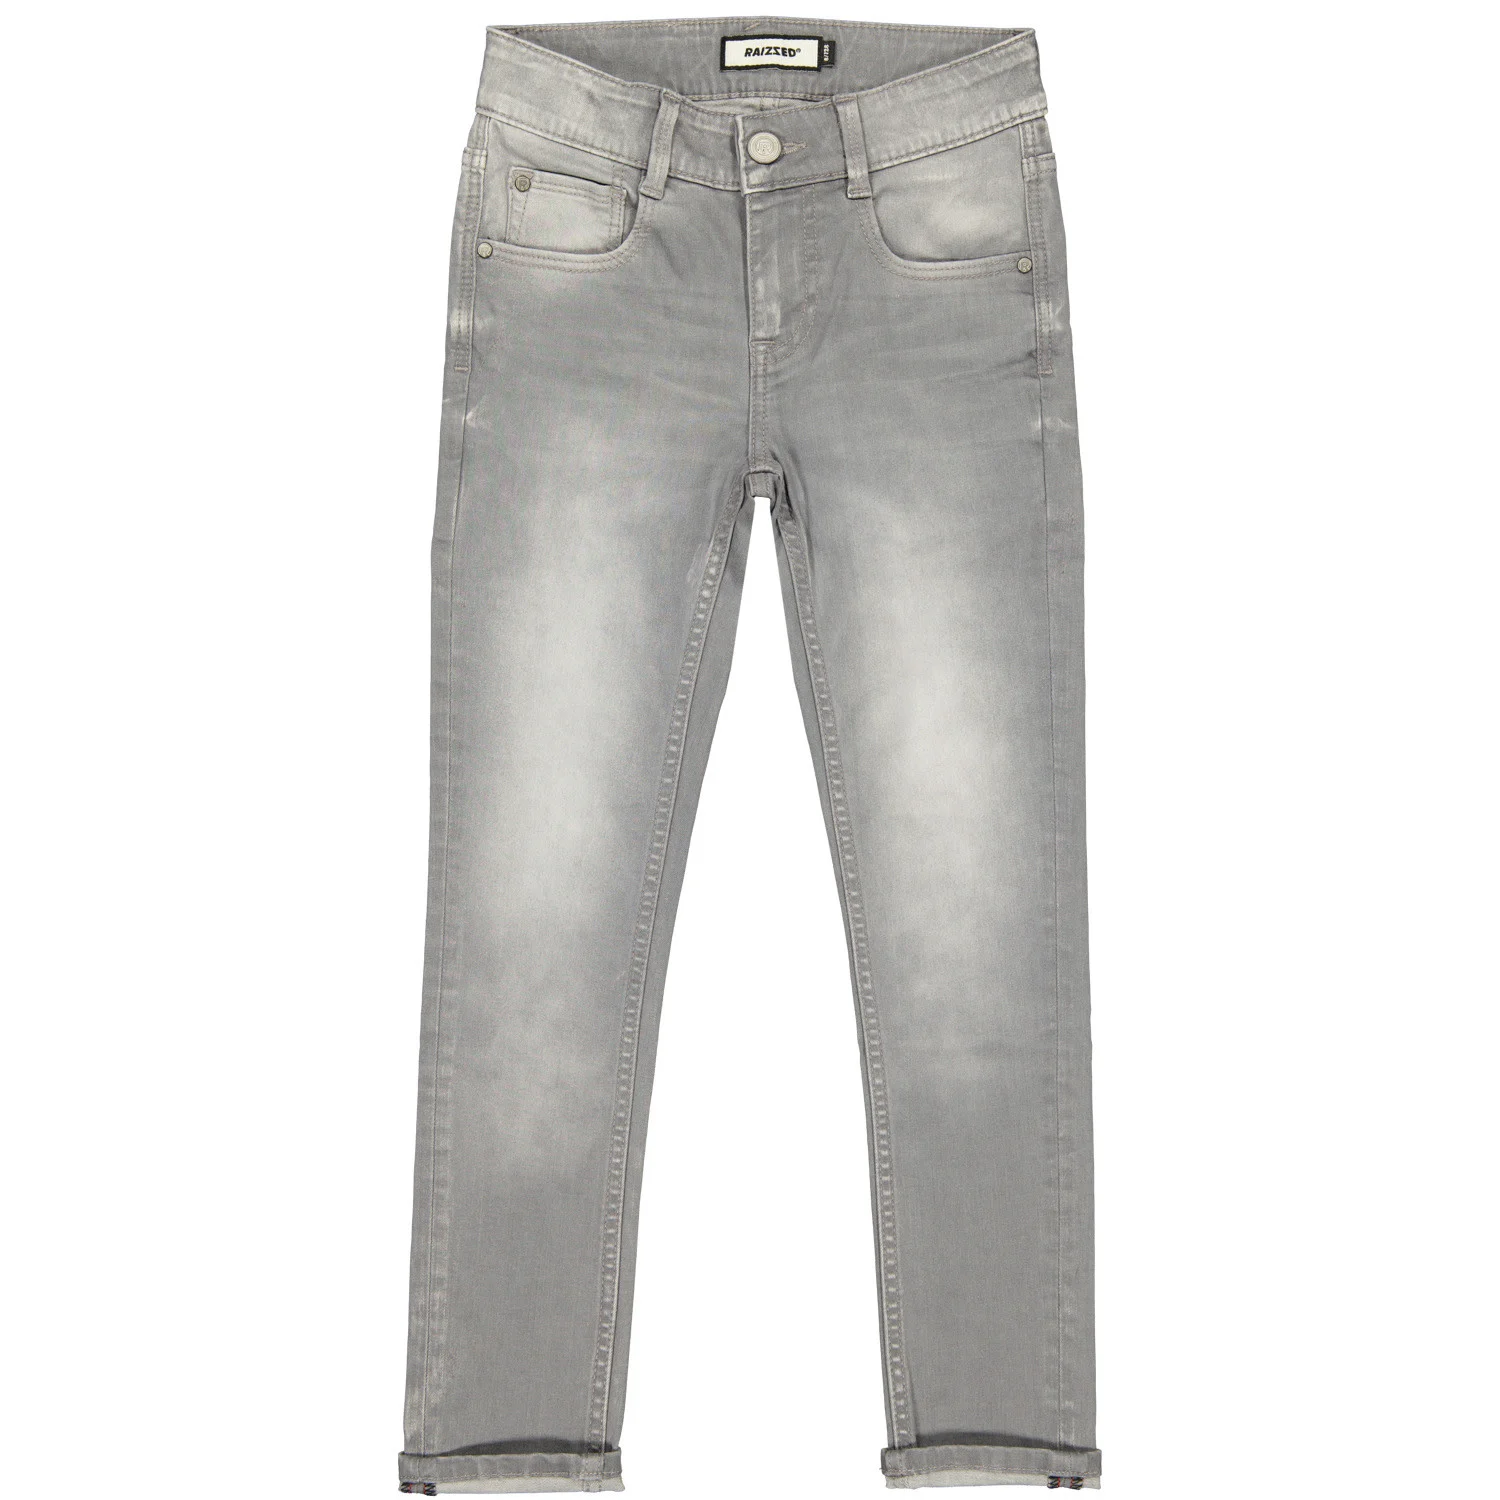 Afbeelding van Raizzed Jongens jeans nora tokyo skinny mid grey stone